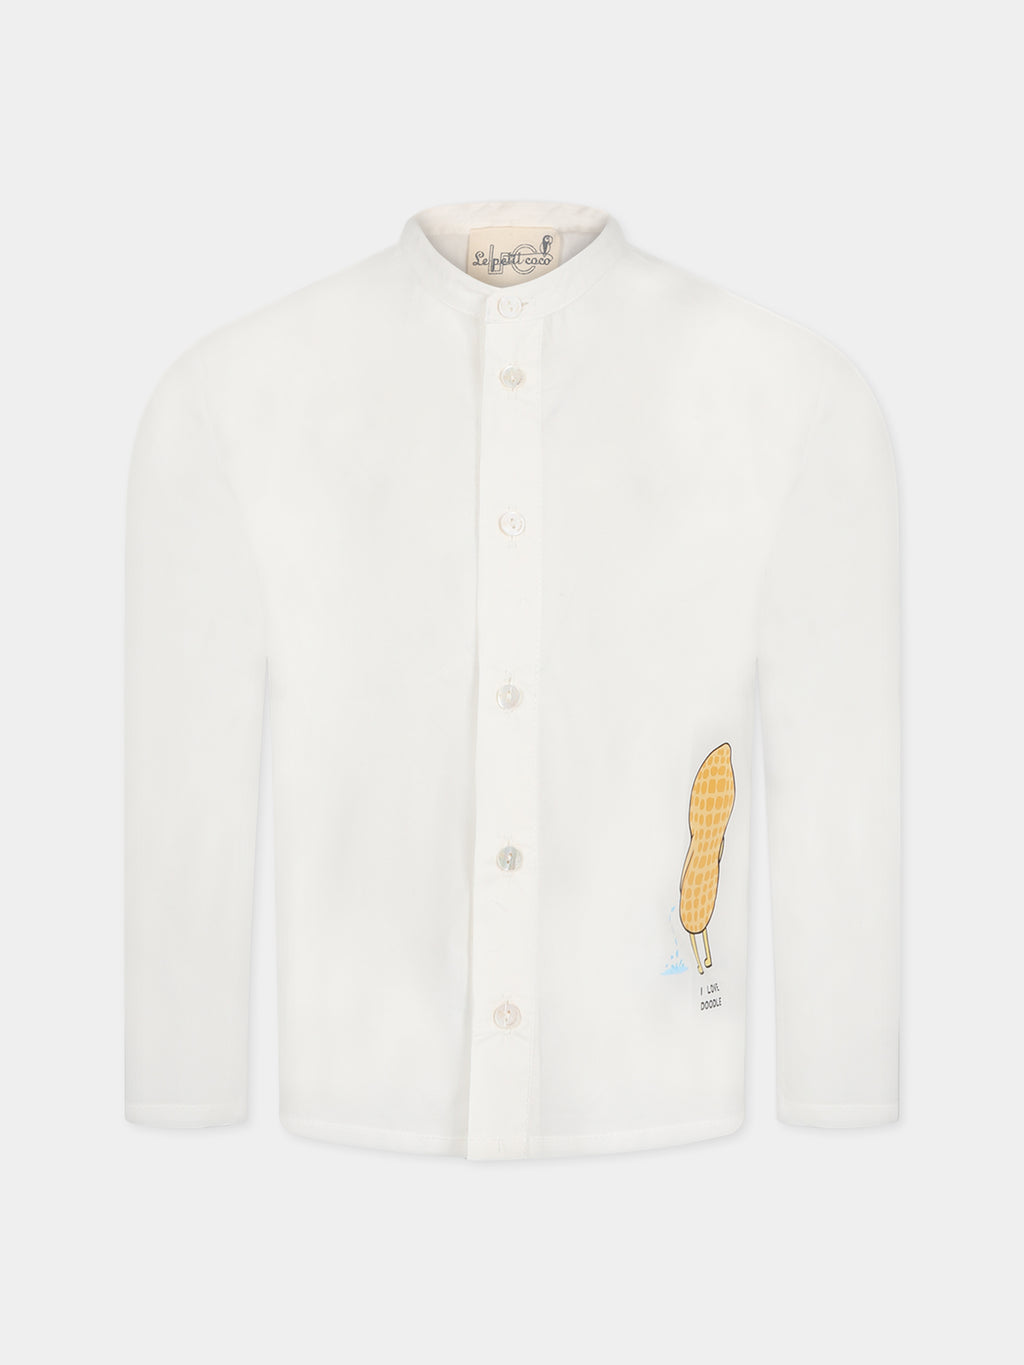 Camicia bianca per bambino con stampa e scritta  I love doodle 